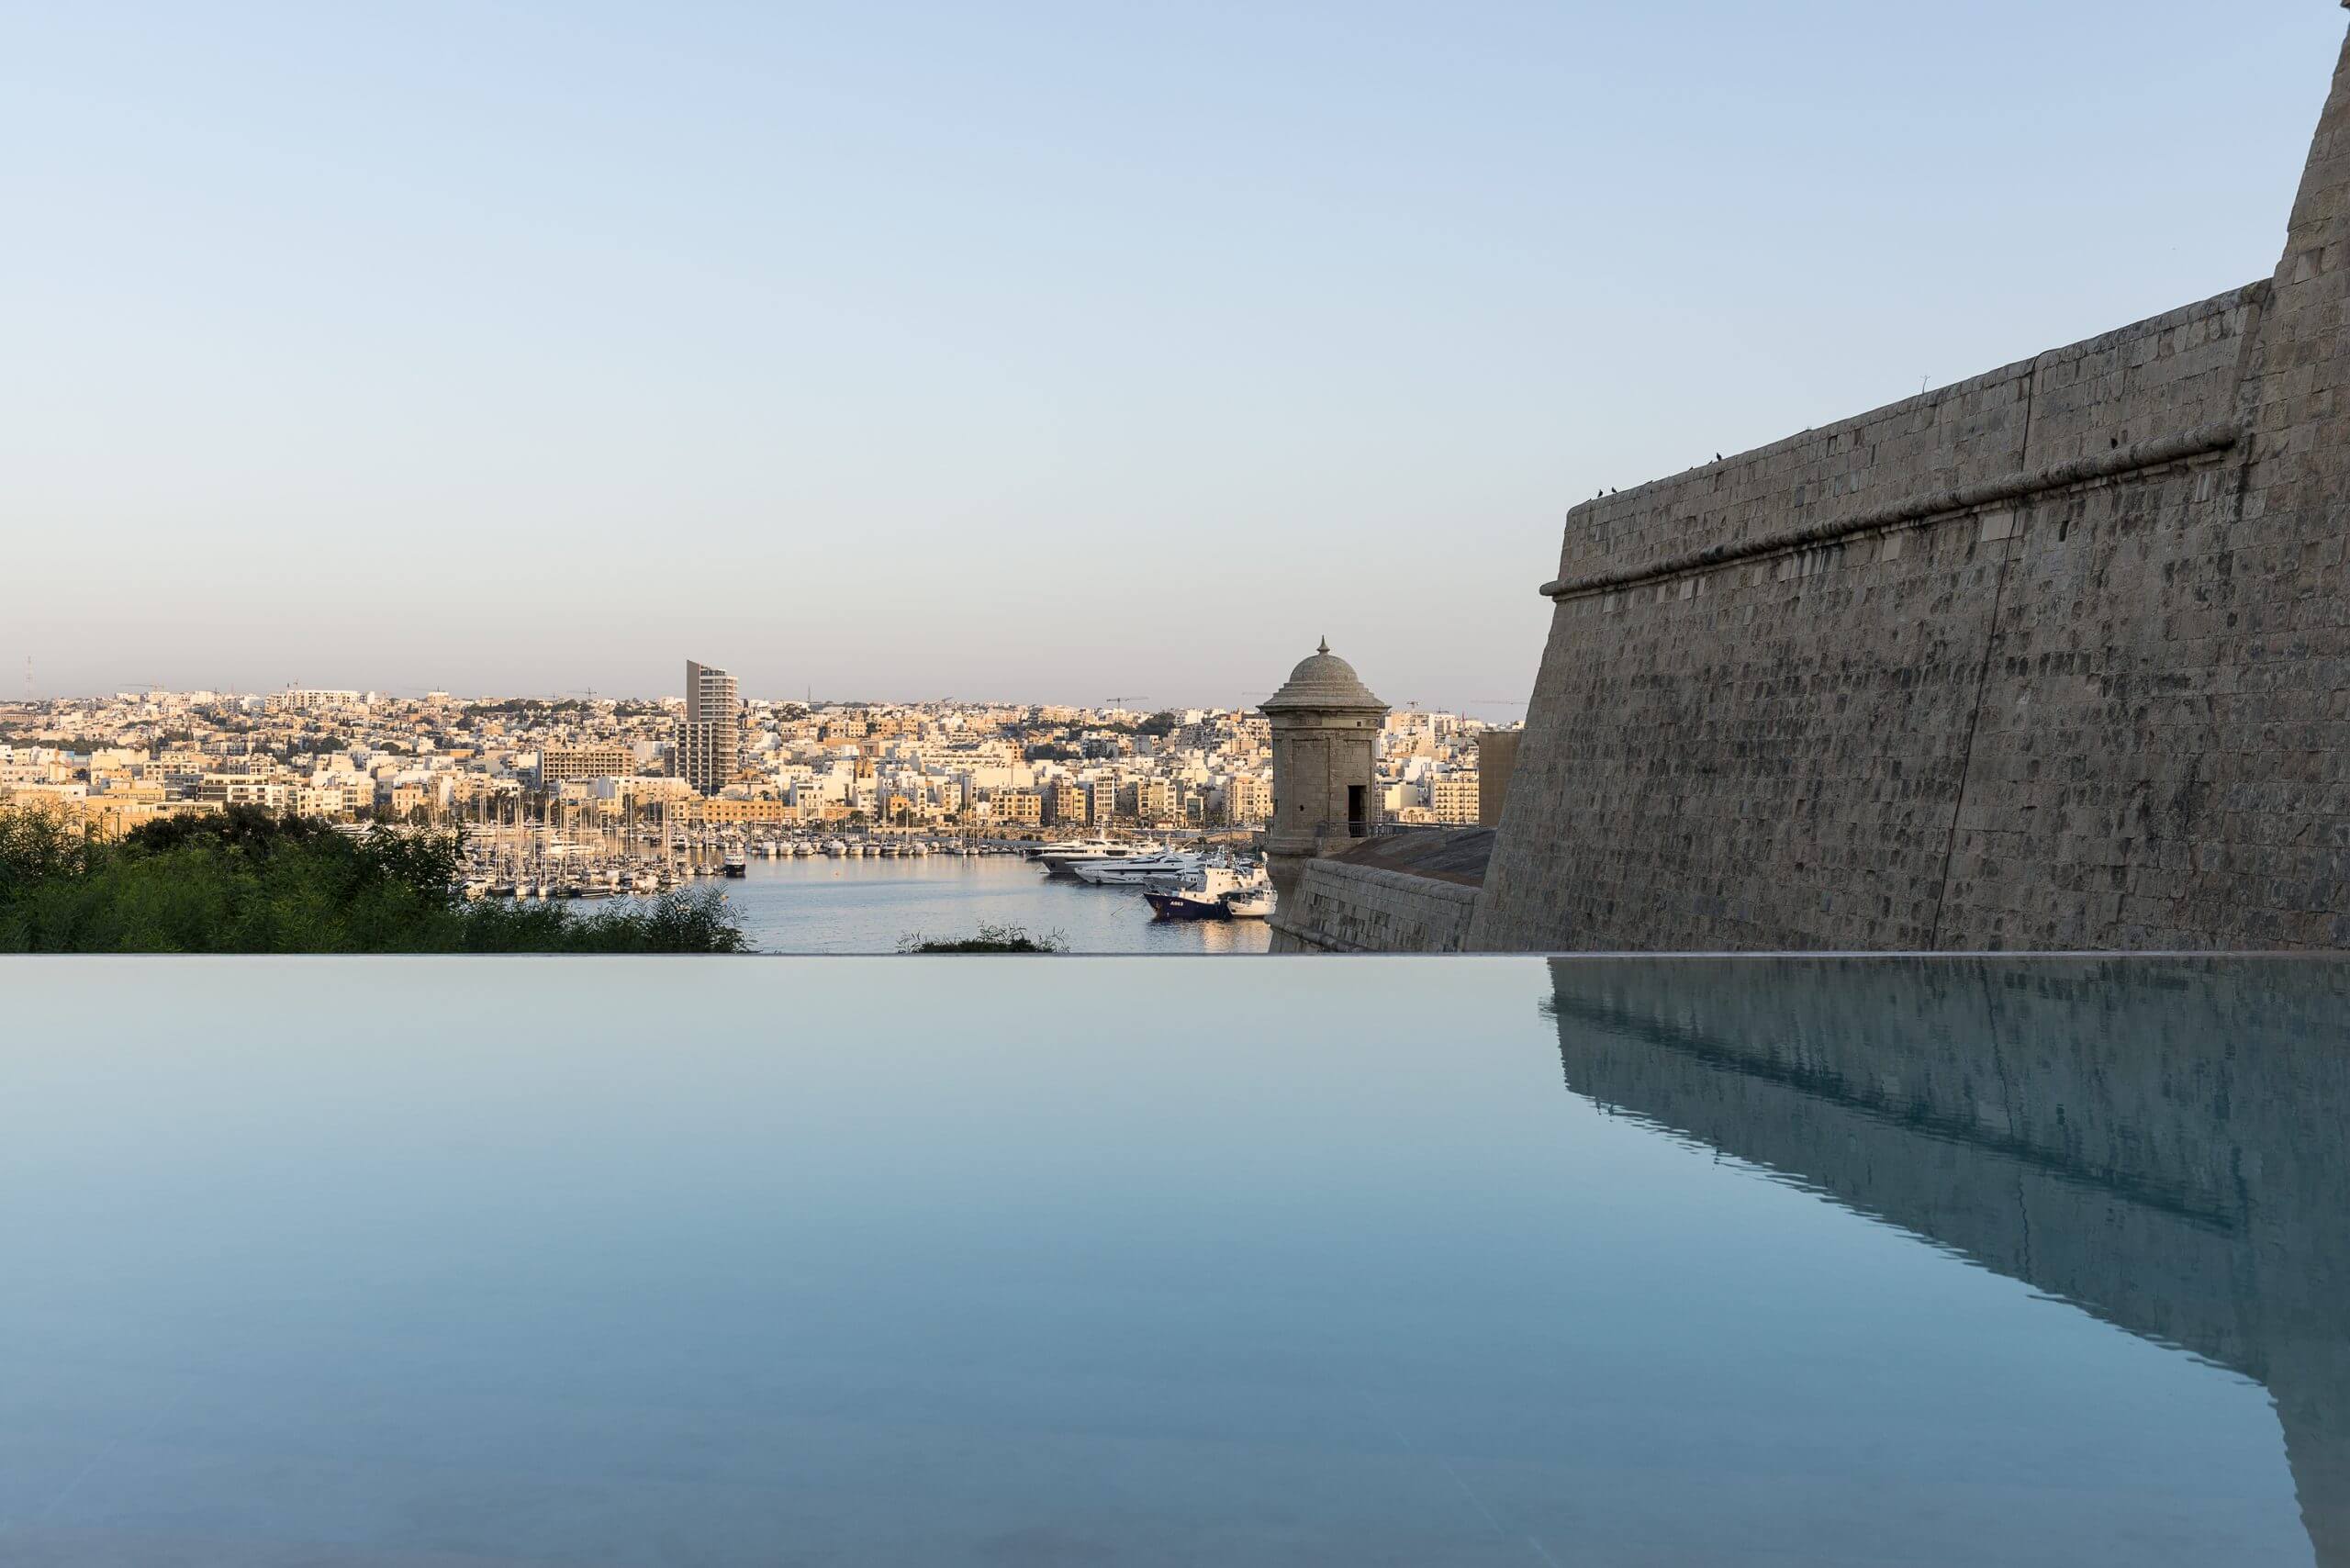 Phoenicia Malta Pool overlooks the bay of Malta